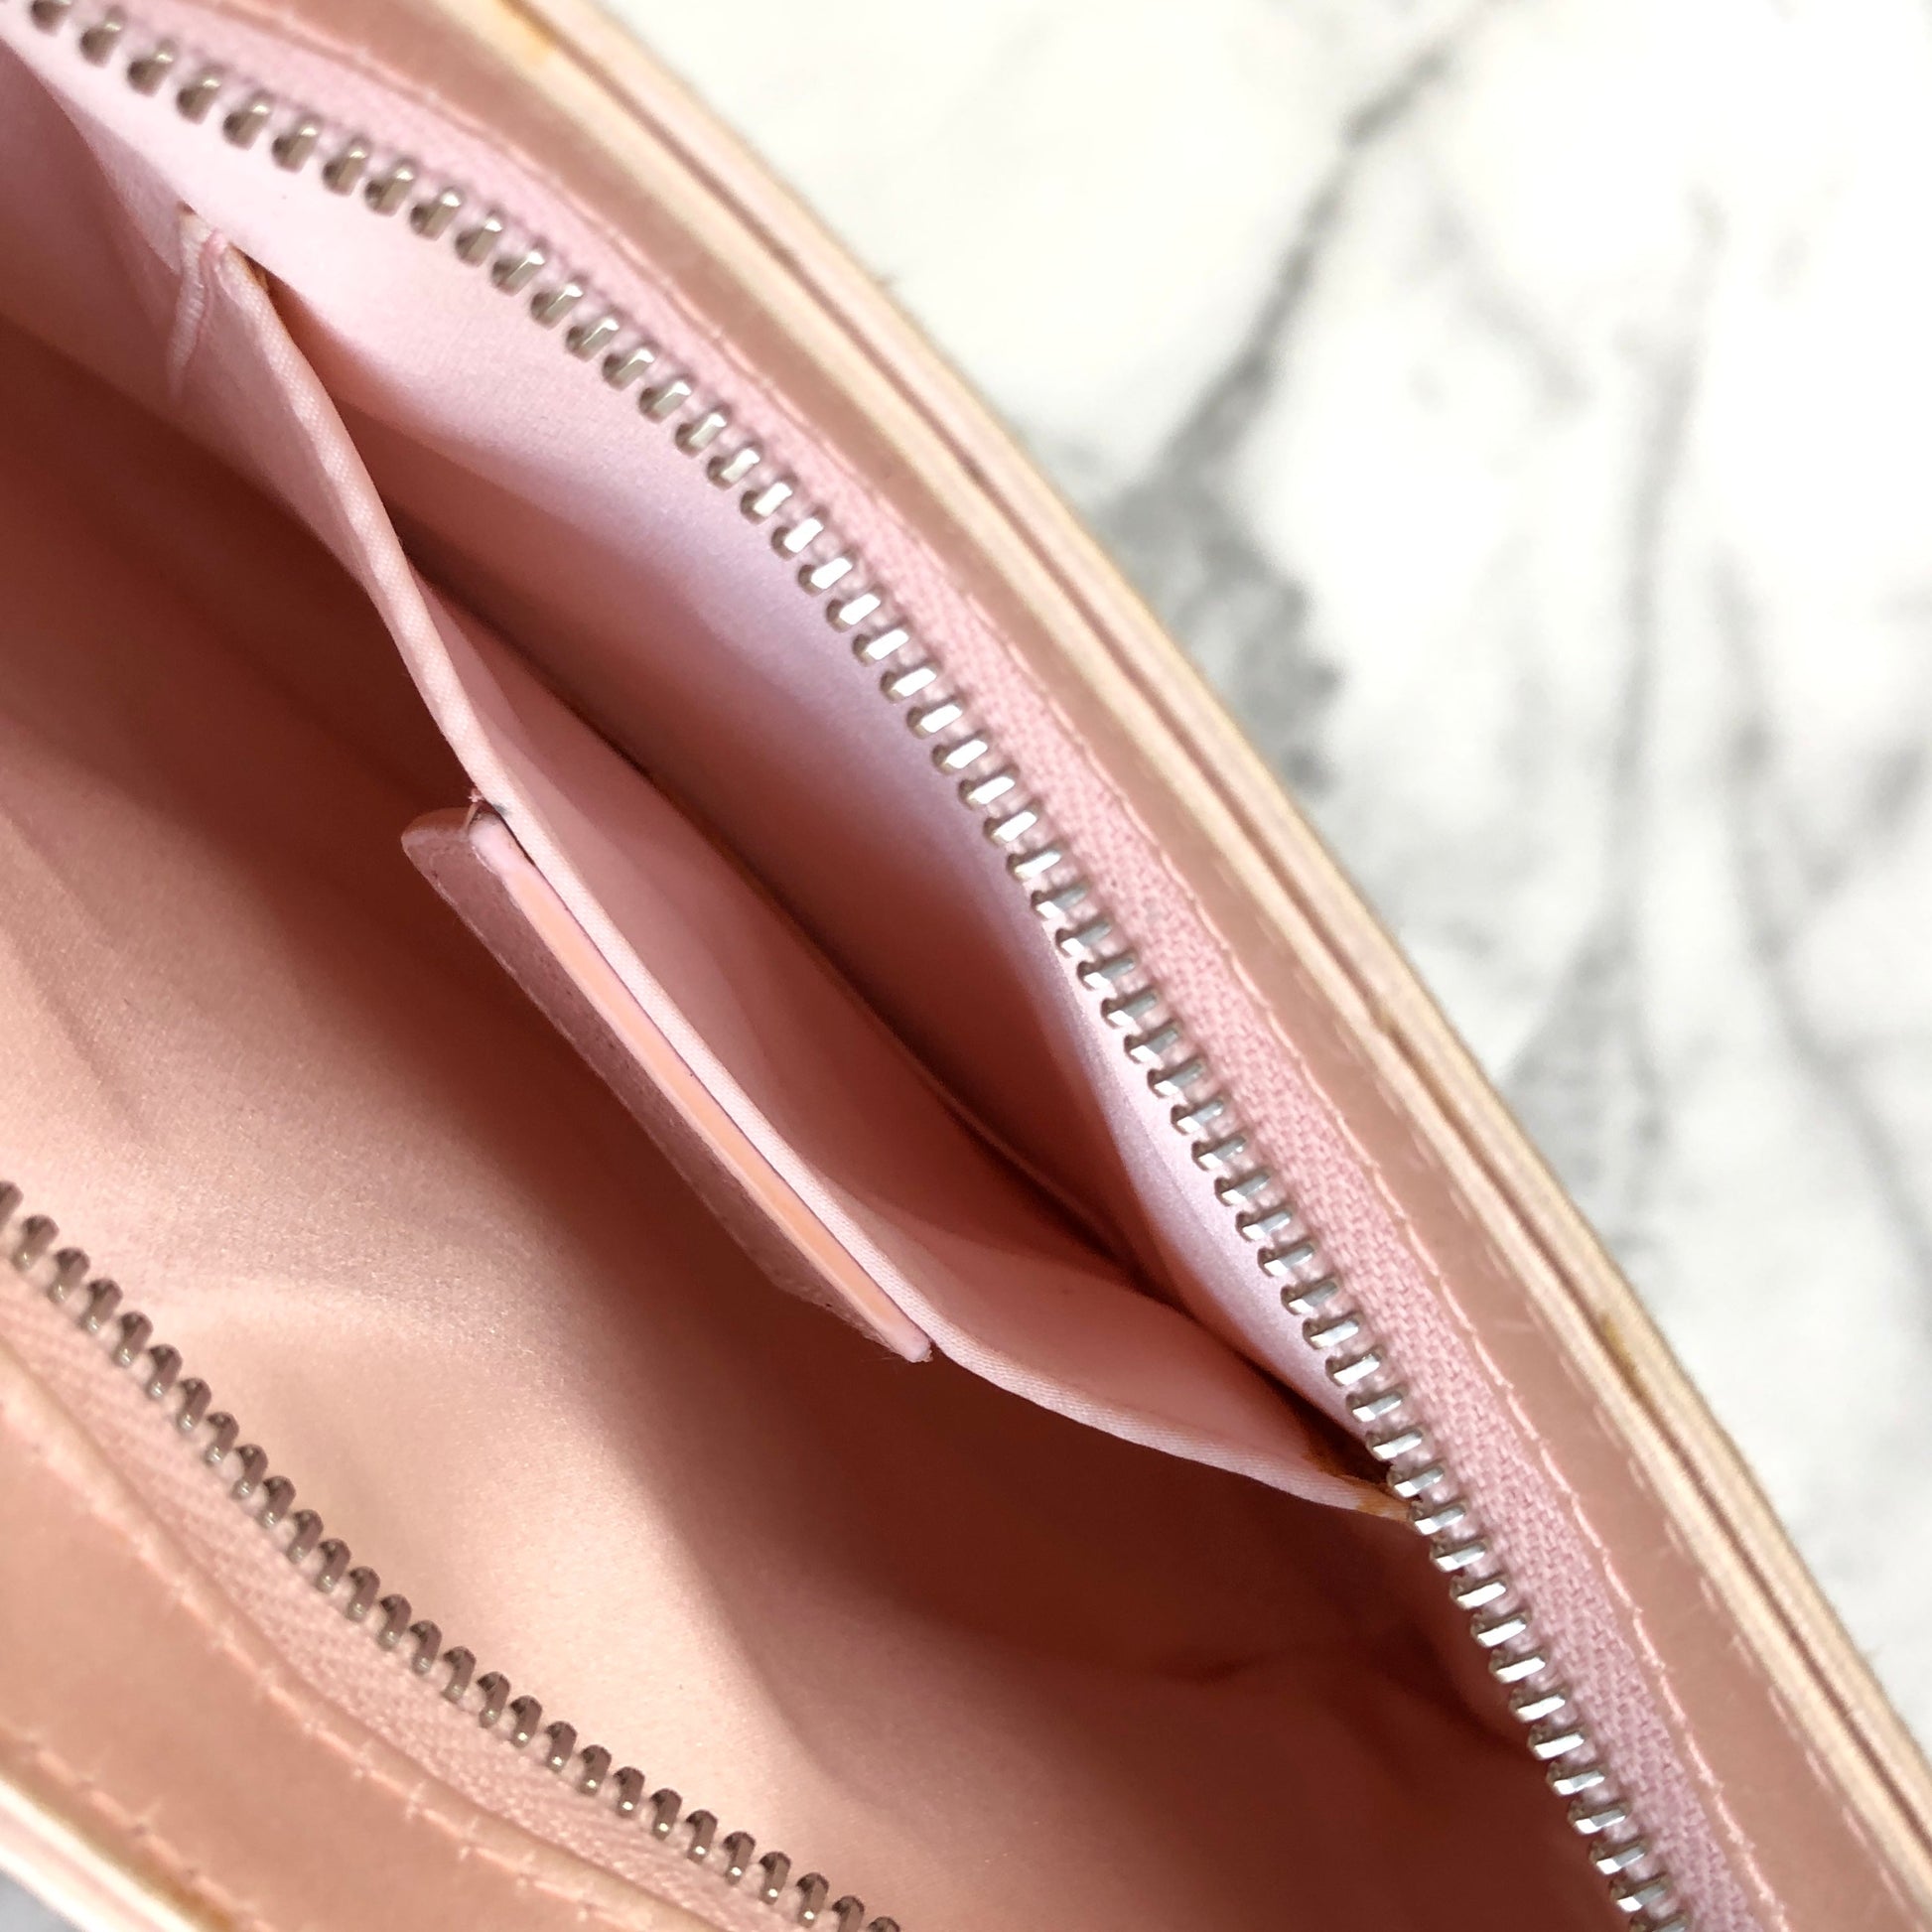 Celine Solo Women's Leather Clutch Bag Bordeaux,Light Pink